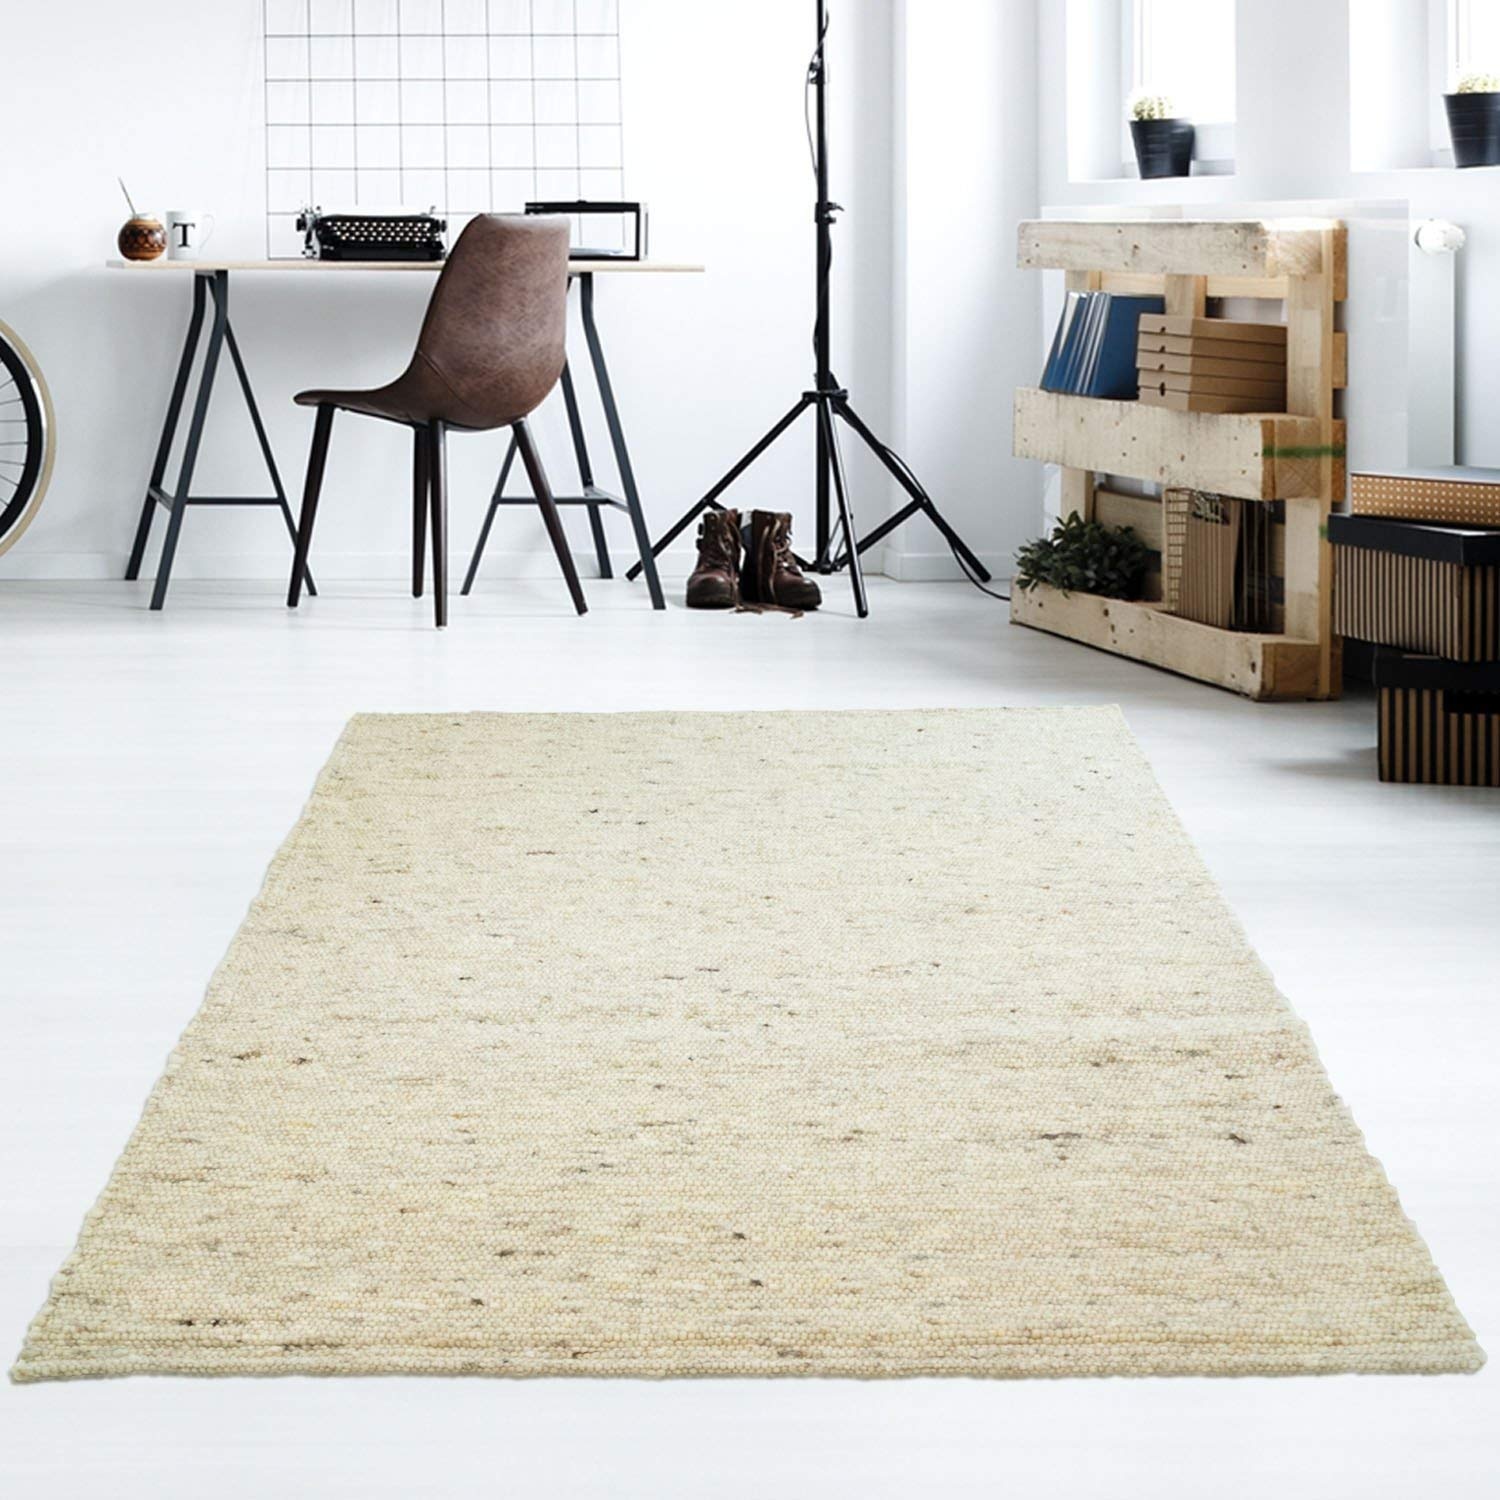 Taracarpet Moderner Handweb Teppich Alpina handgewebt aus Schurwolle für Wohnzimmer, Esszimmer, Schlafzimmer und die Küche geeignet (070 x 130 cm, 60 Beige meliert)